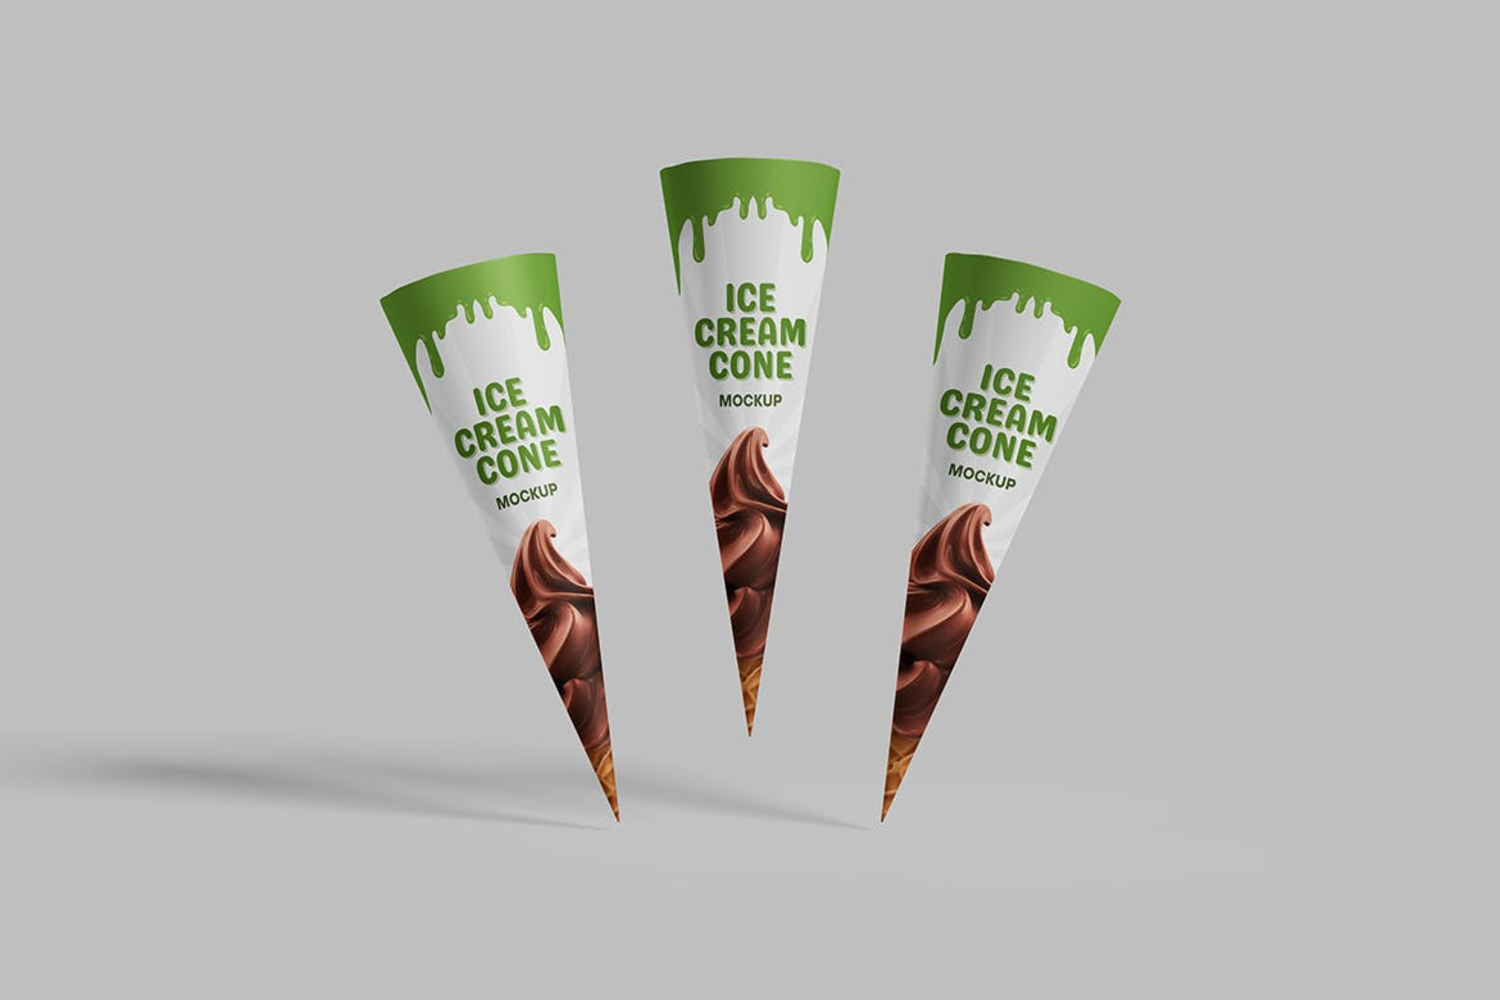 6242 创意设计手工制作美味蛋卷冰淇淋模型样机-ice cream cone mockup